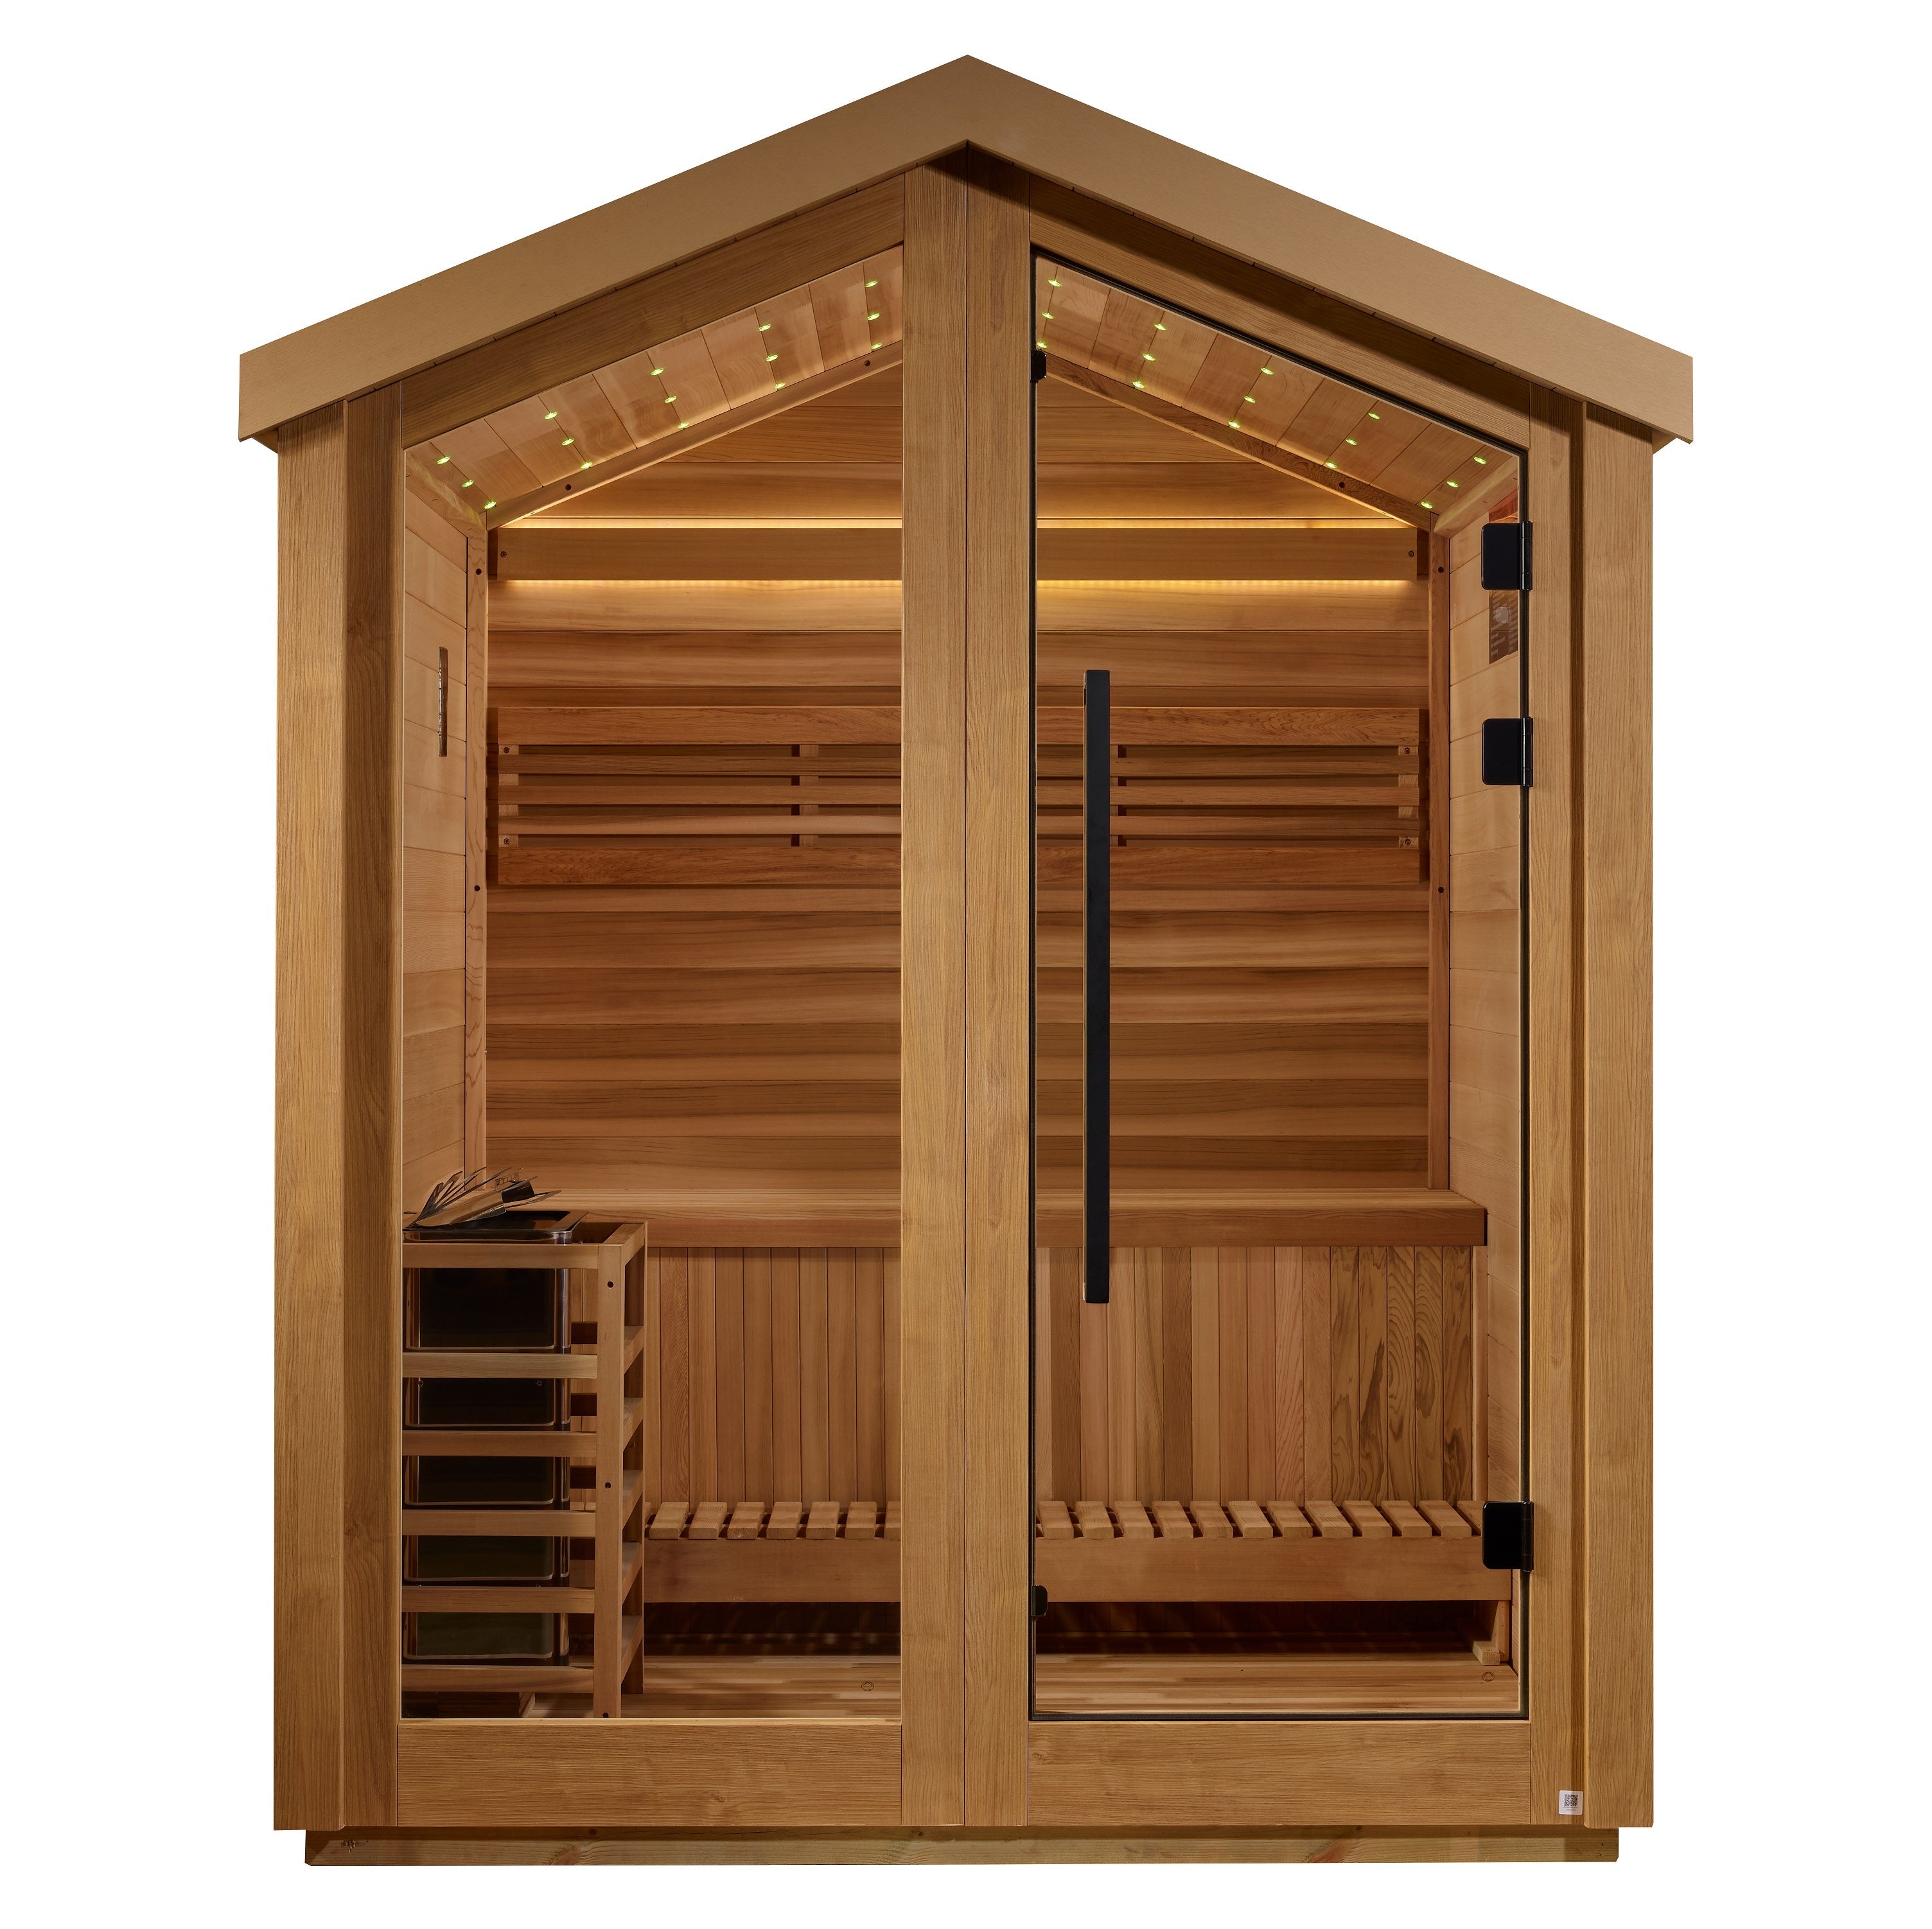 Golden Designs Savonlinna 3 Person Outdoor Traditional Sauna  Golden Designs Saunas   